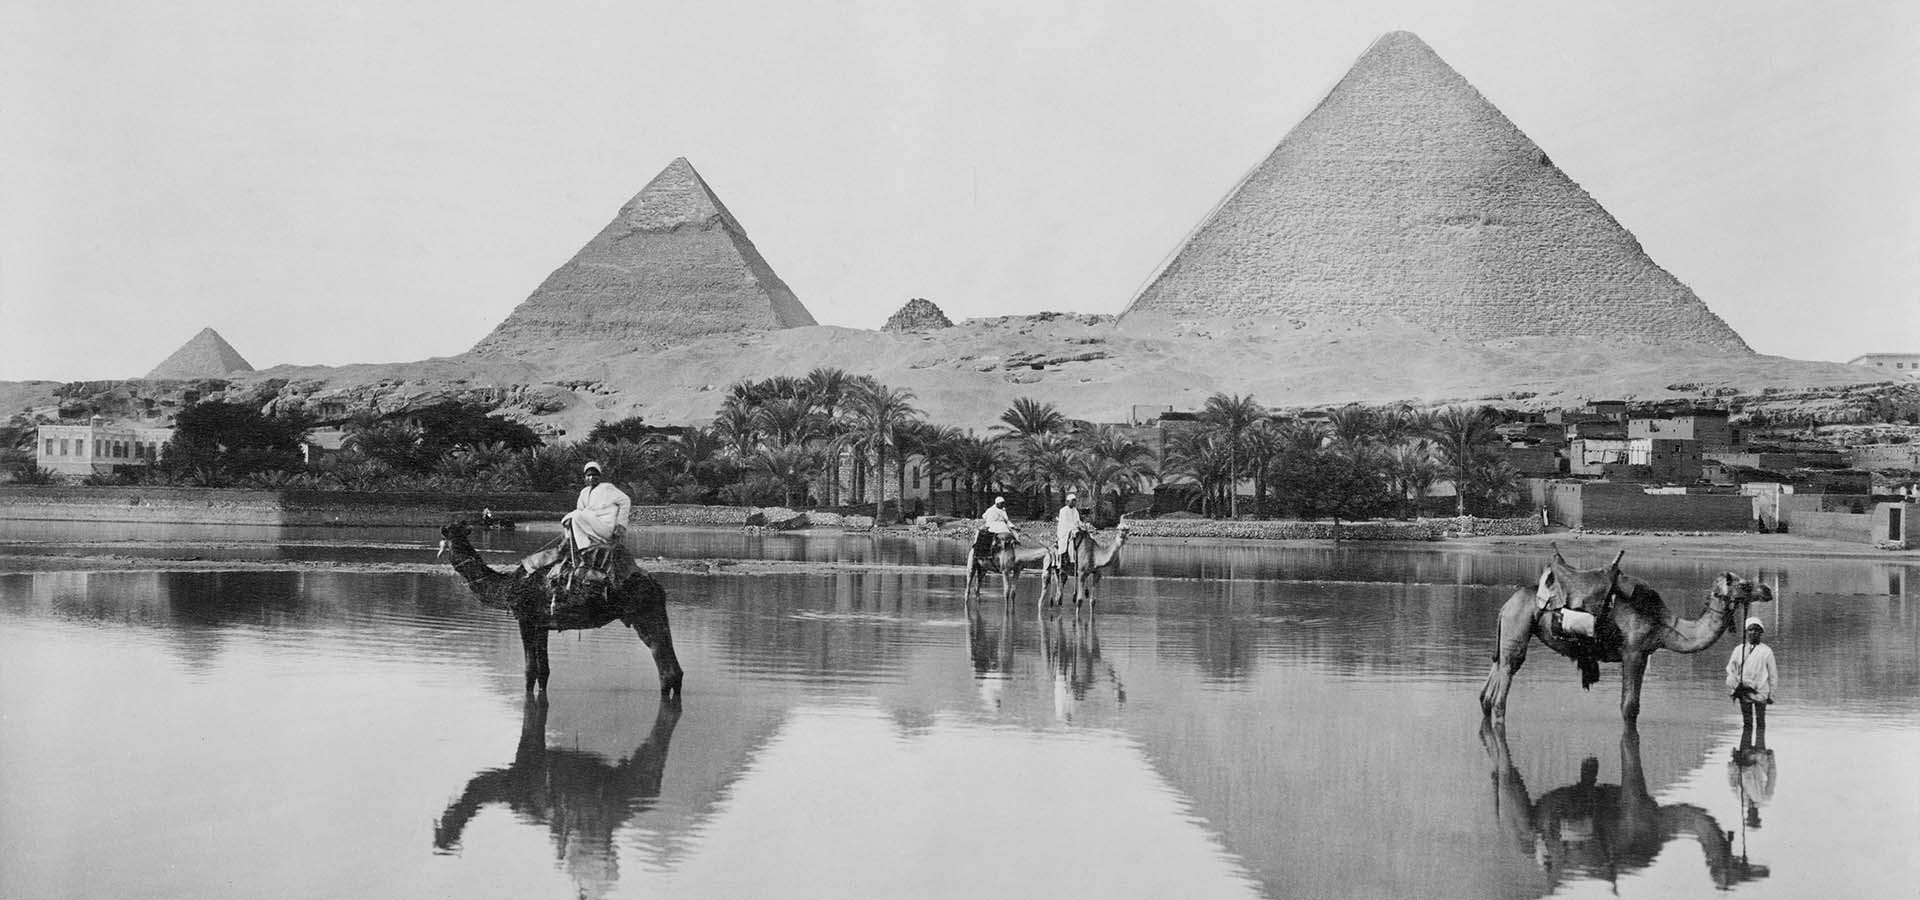 Uomini e cammelli in acqua bassa con le piramidi sullo sfondo, Egitto, 1890.